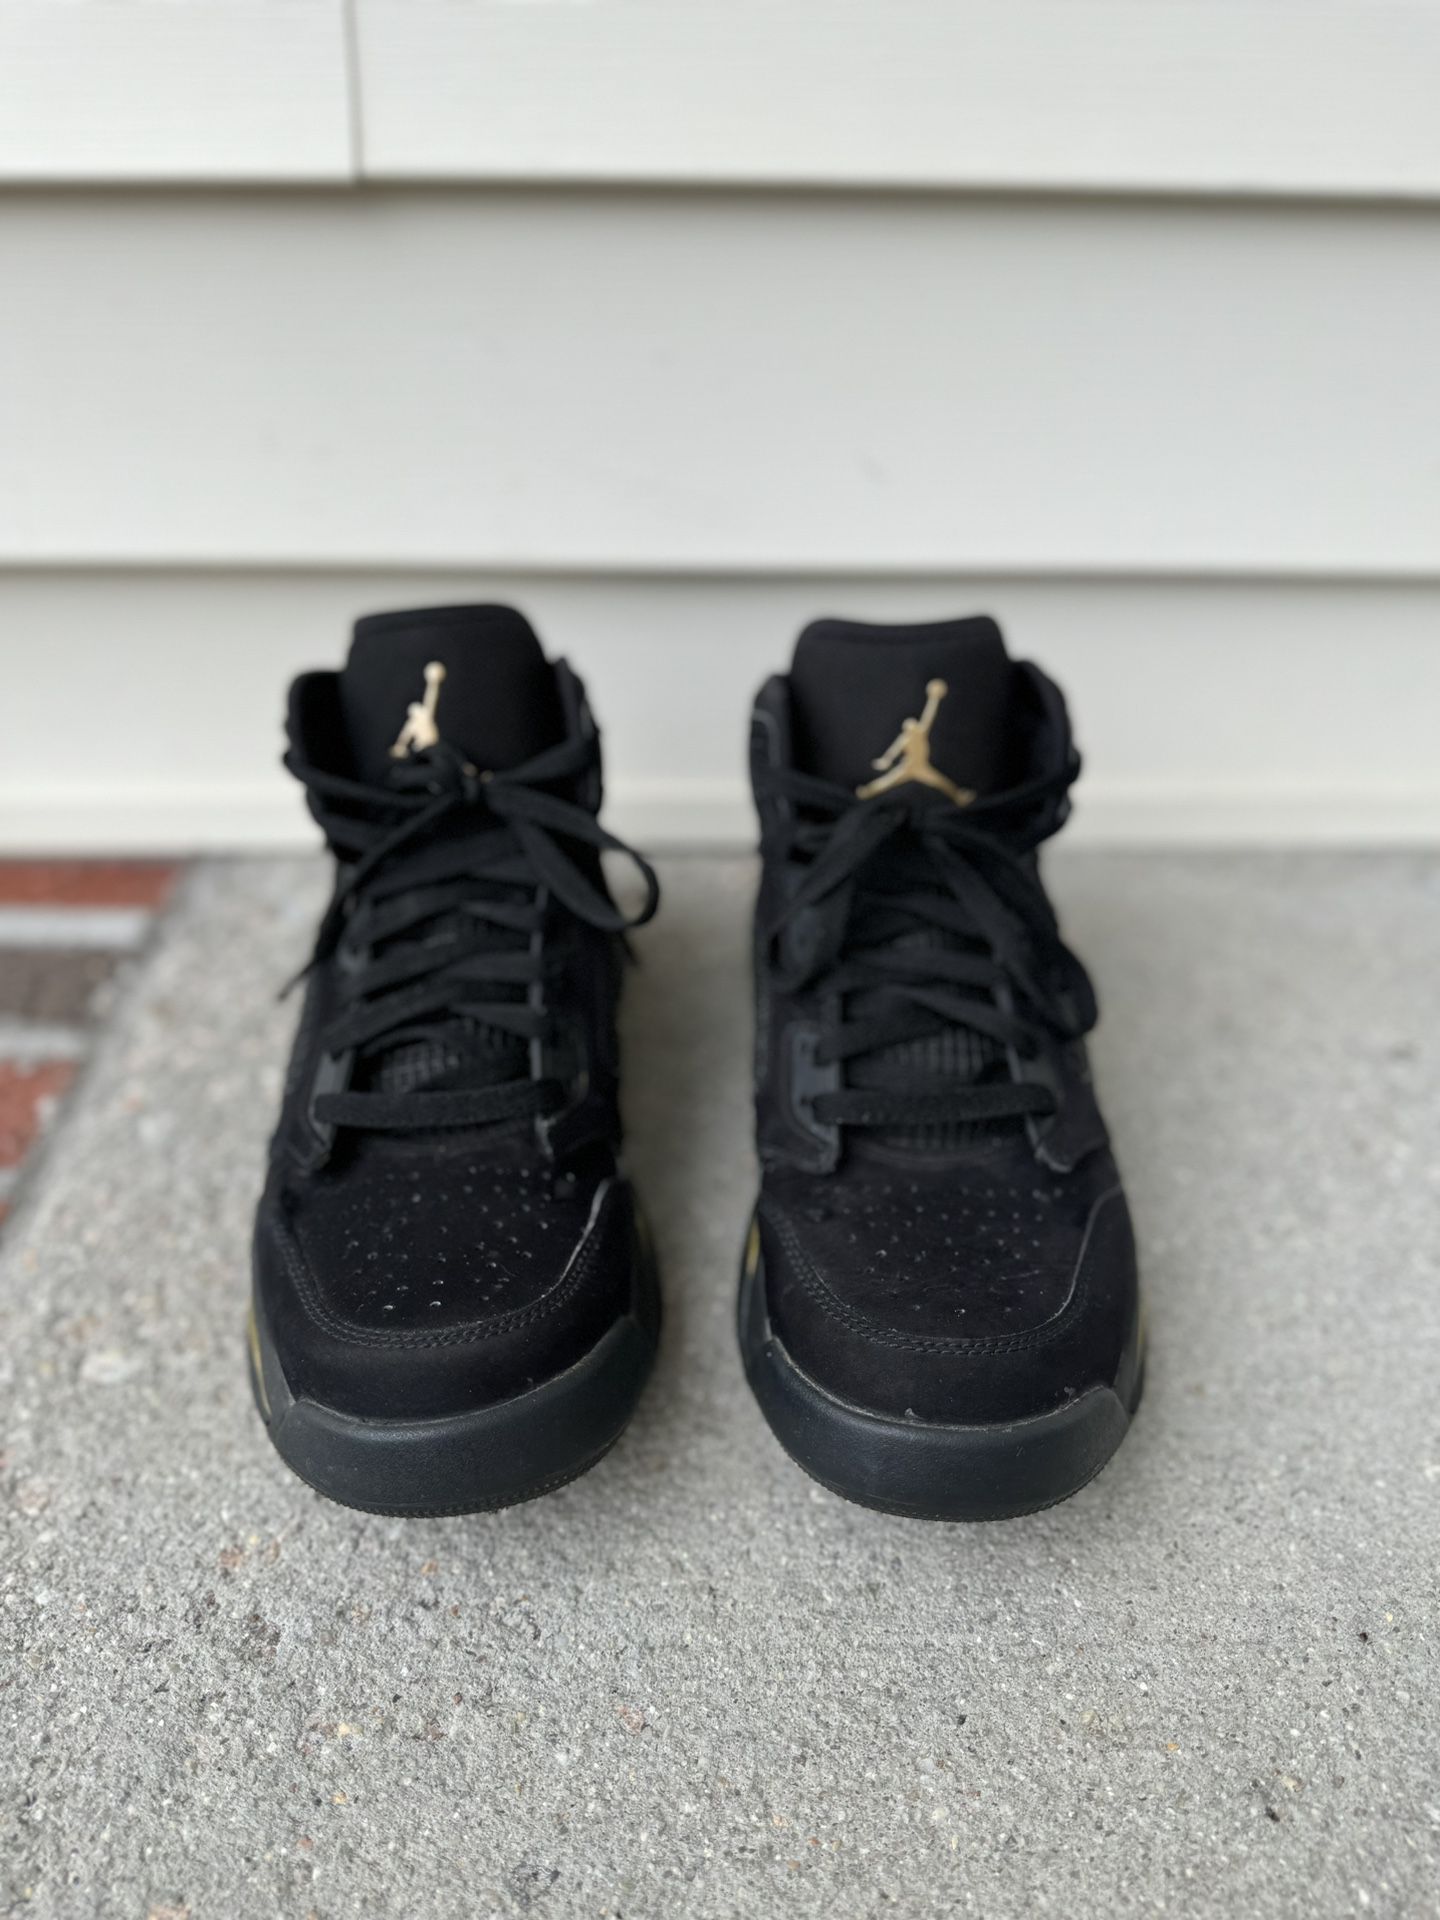 Nike Mens Air Jordan Mars 270 CD7070-007 Black Basketball Shoes Sneakers Size 8 